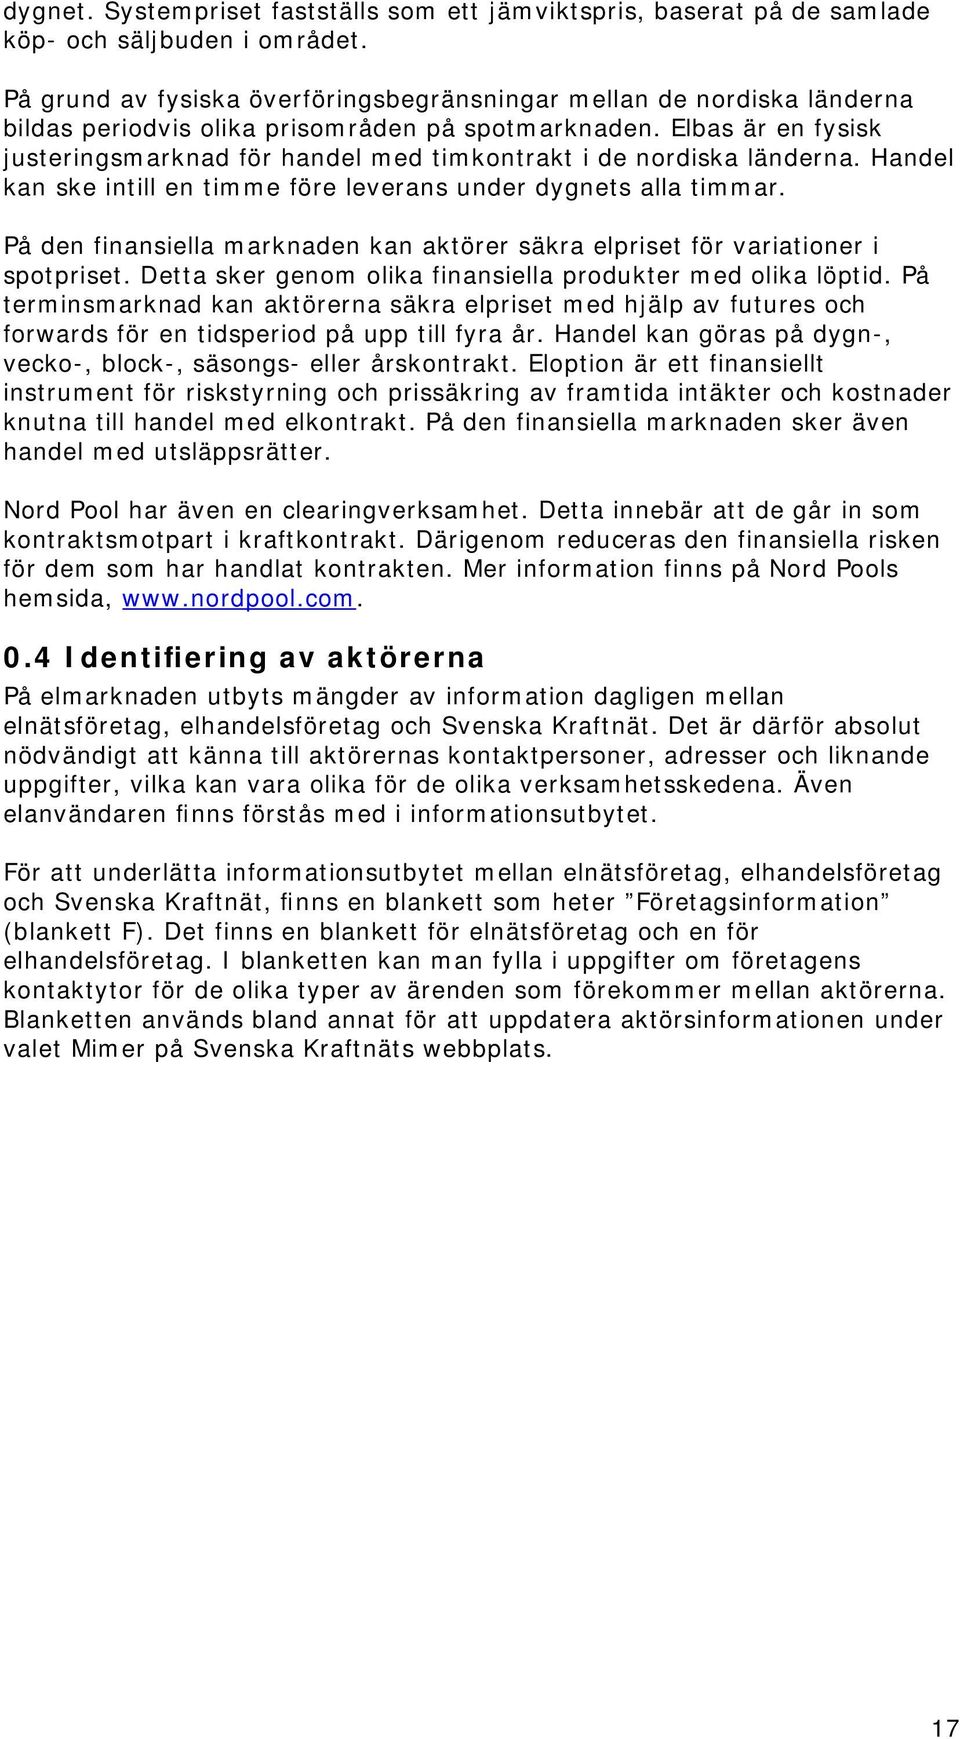 SVENSK ELMARKNADSHANDBOK - PDF Gratis nedladdning